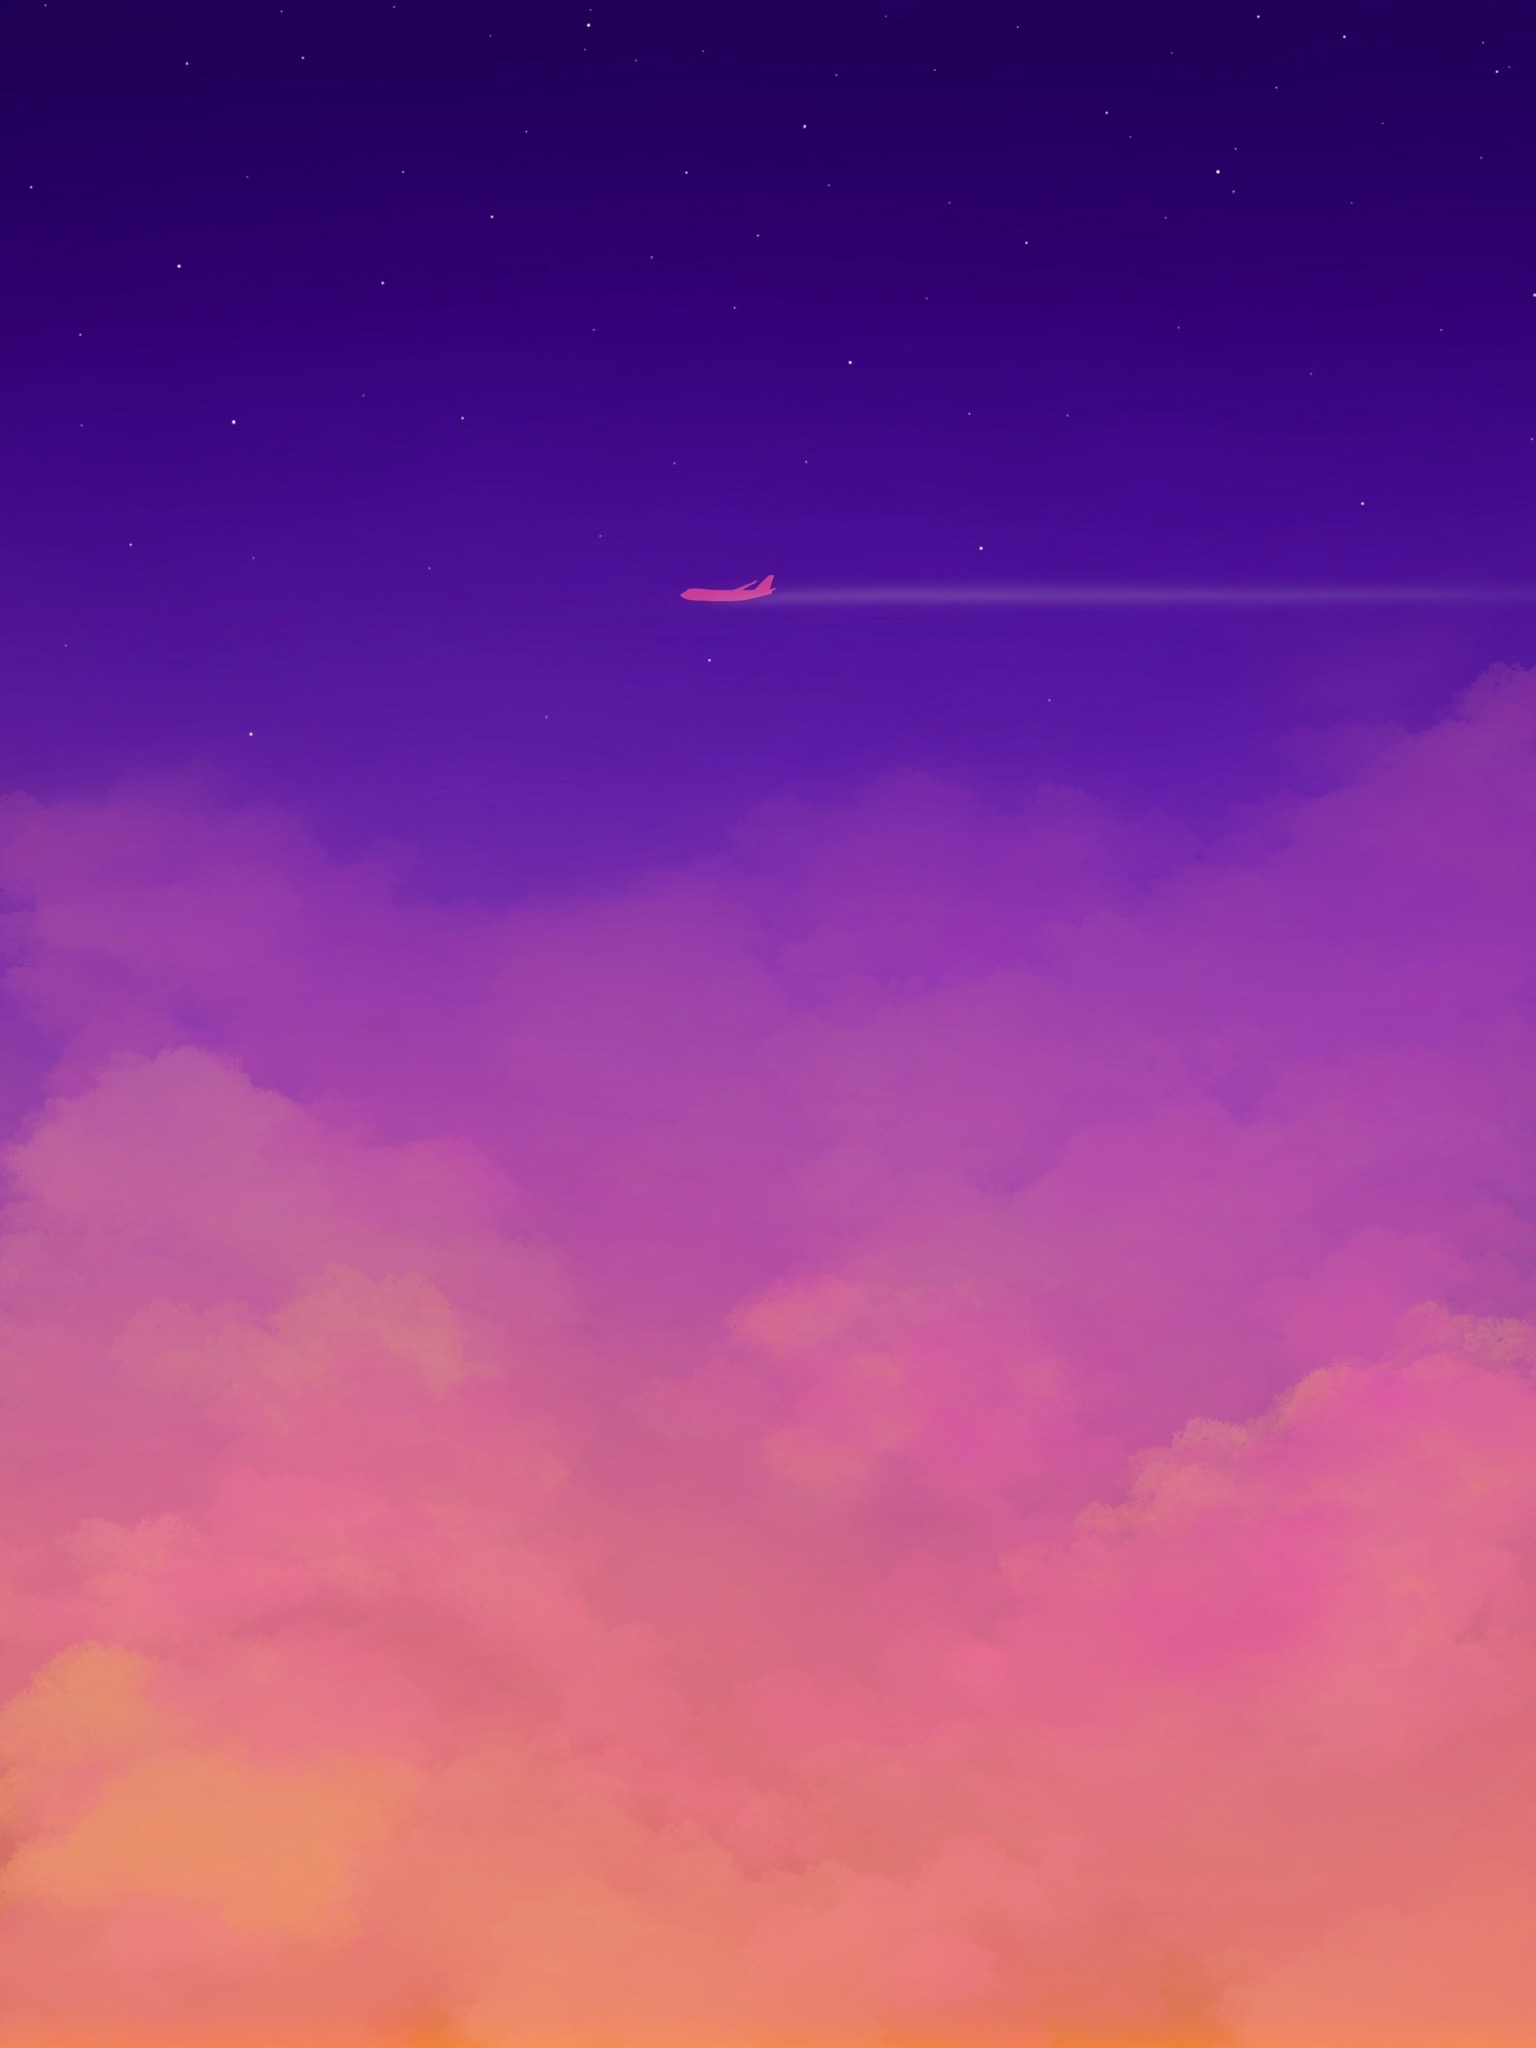 Скачать обои бесплатно Облака, Небо, Самолет, Арт картинка на рабочий стол ПК